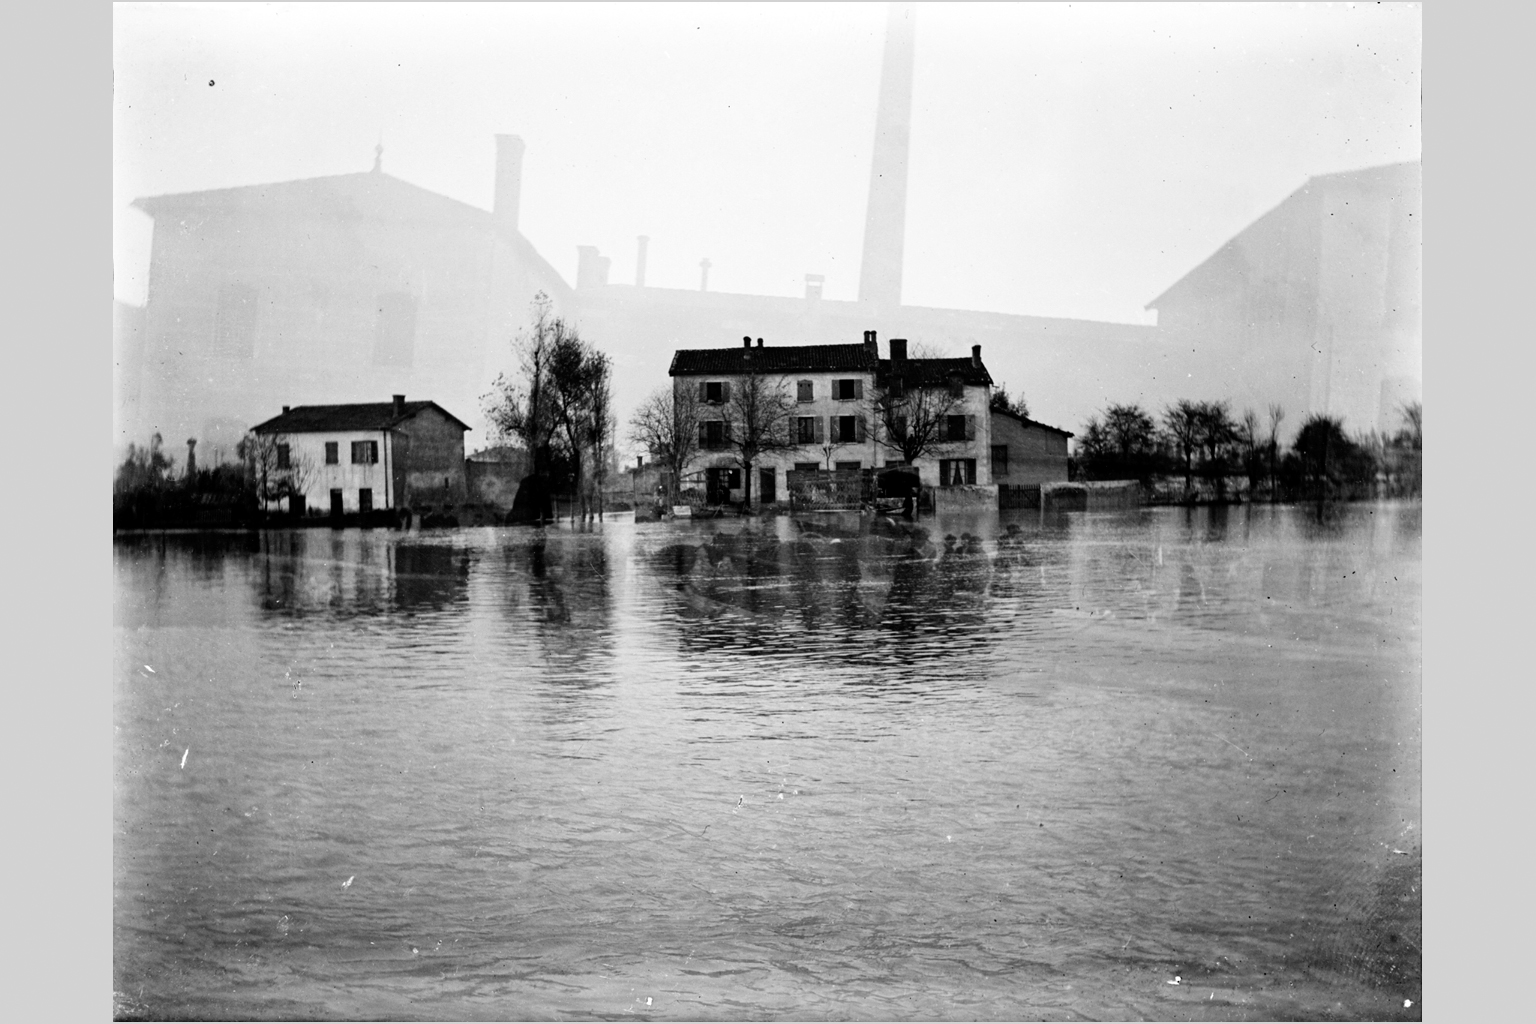 Crue de la Saône à Lyon en 1899, site habité non identifié : photo négative NB sur plaque de verre (1900, cote : 10PH/59)